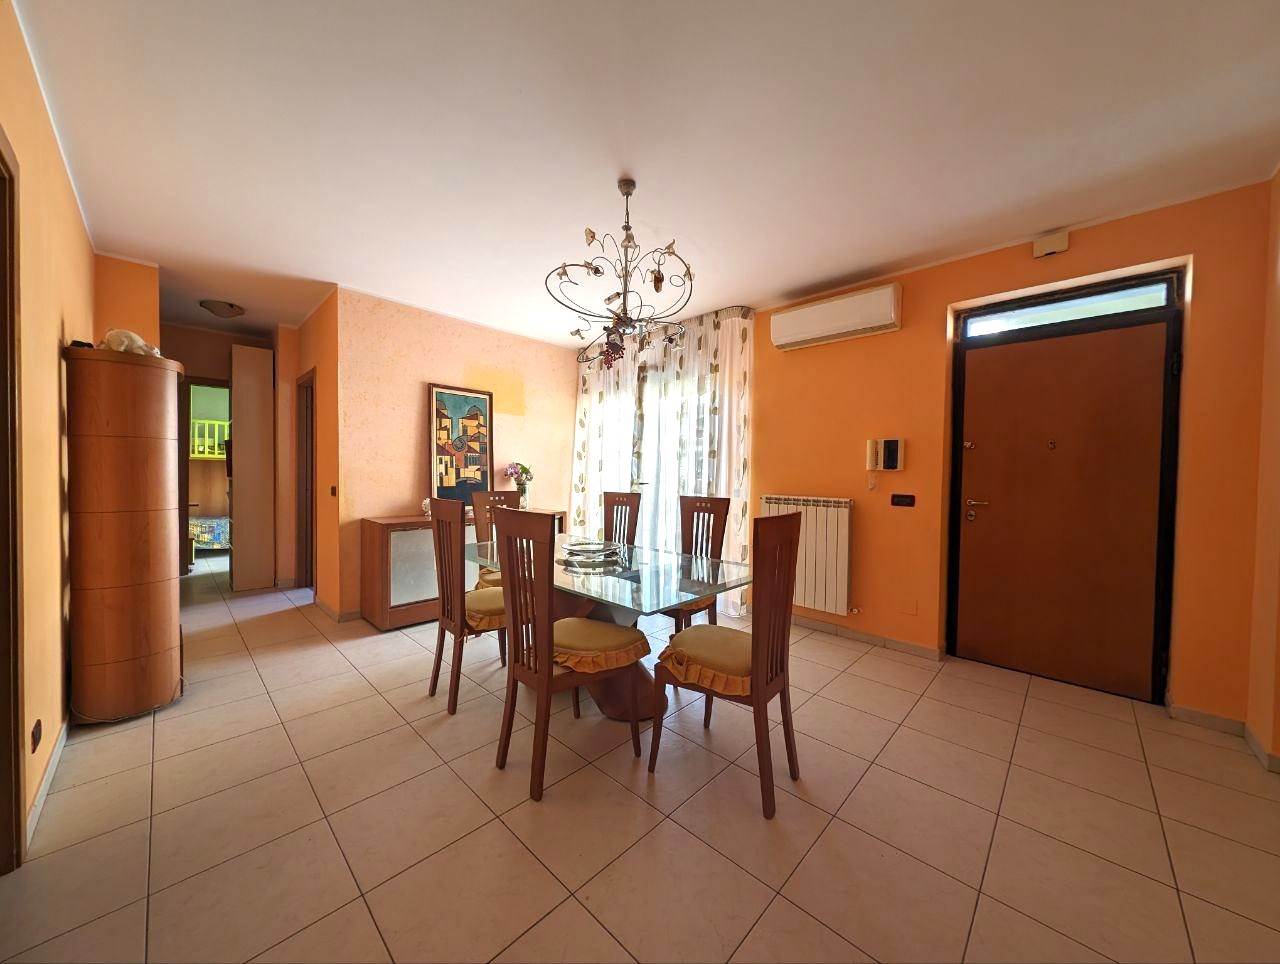 Appartamento in vendita a San Severo, 4 locali, prezzo € 129.000 | PortaleAgenzieImmobiliari.it